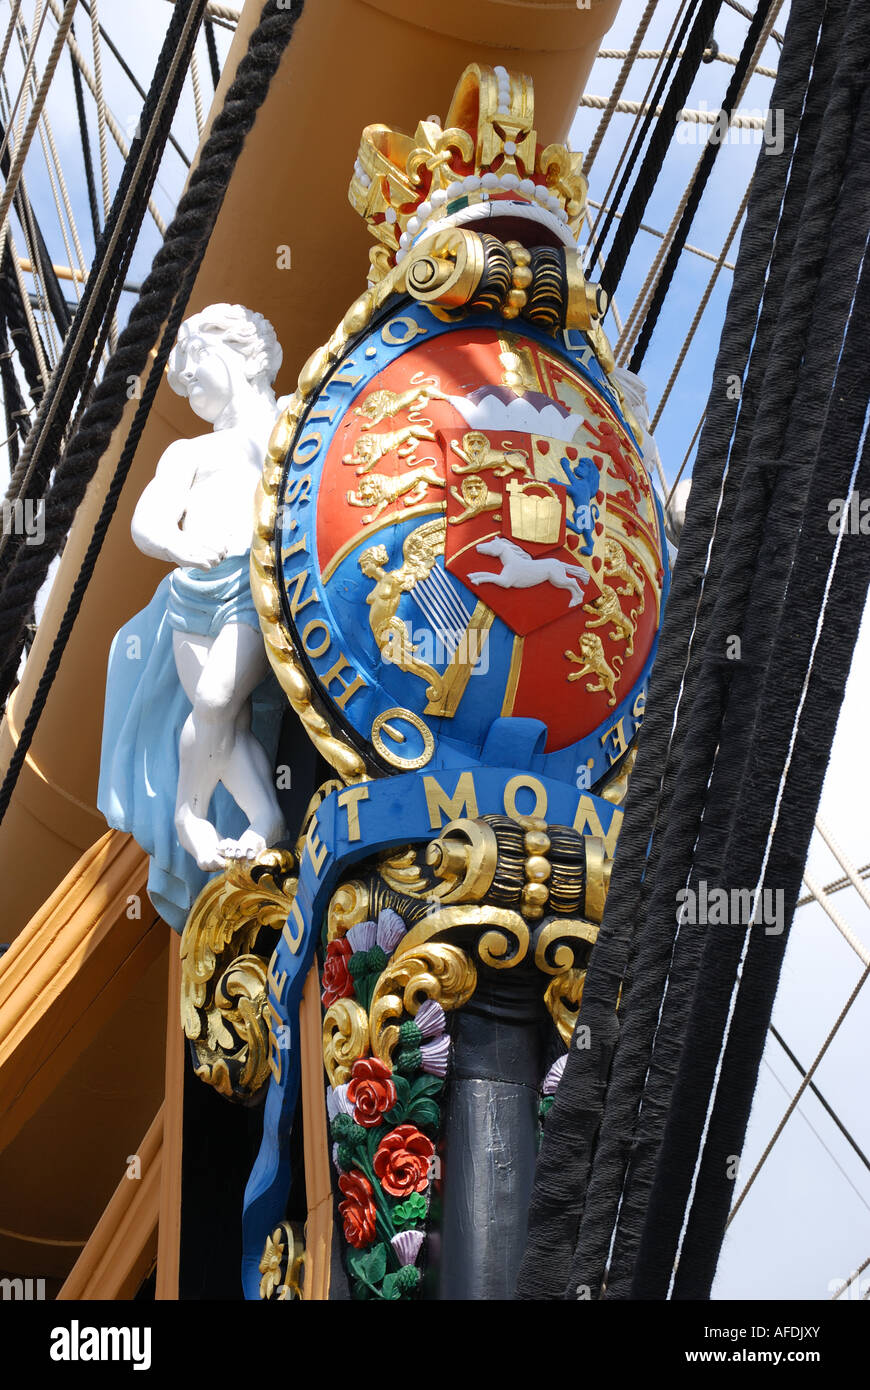 Proue et figure de proue, Nelson's célèbre navire amiral, le HMS Victory, historique de Portsmouth, Portsmouth, Hampshire, Angleterre, Royaume-Uni Banque D'Images